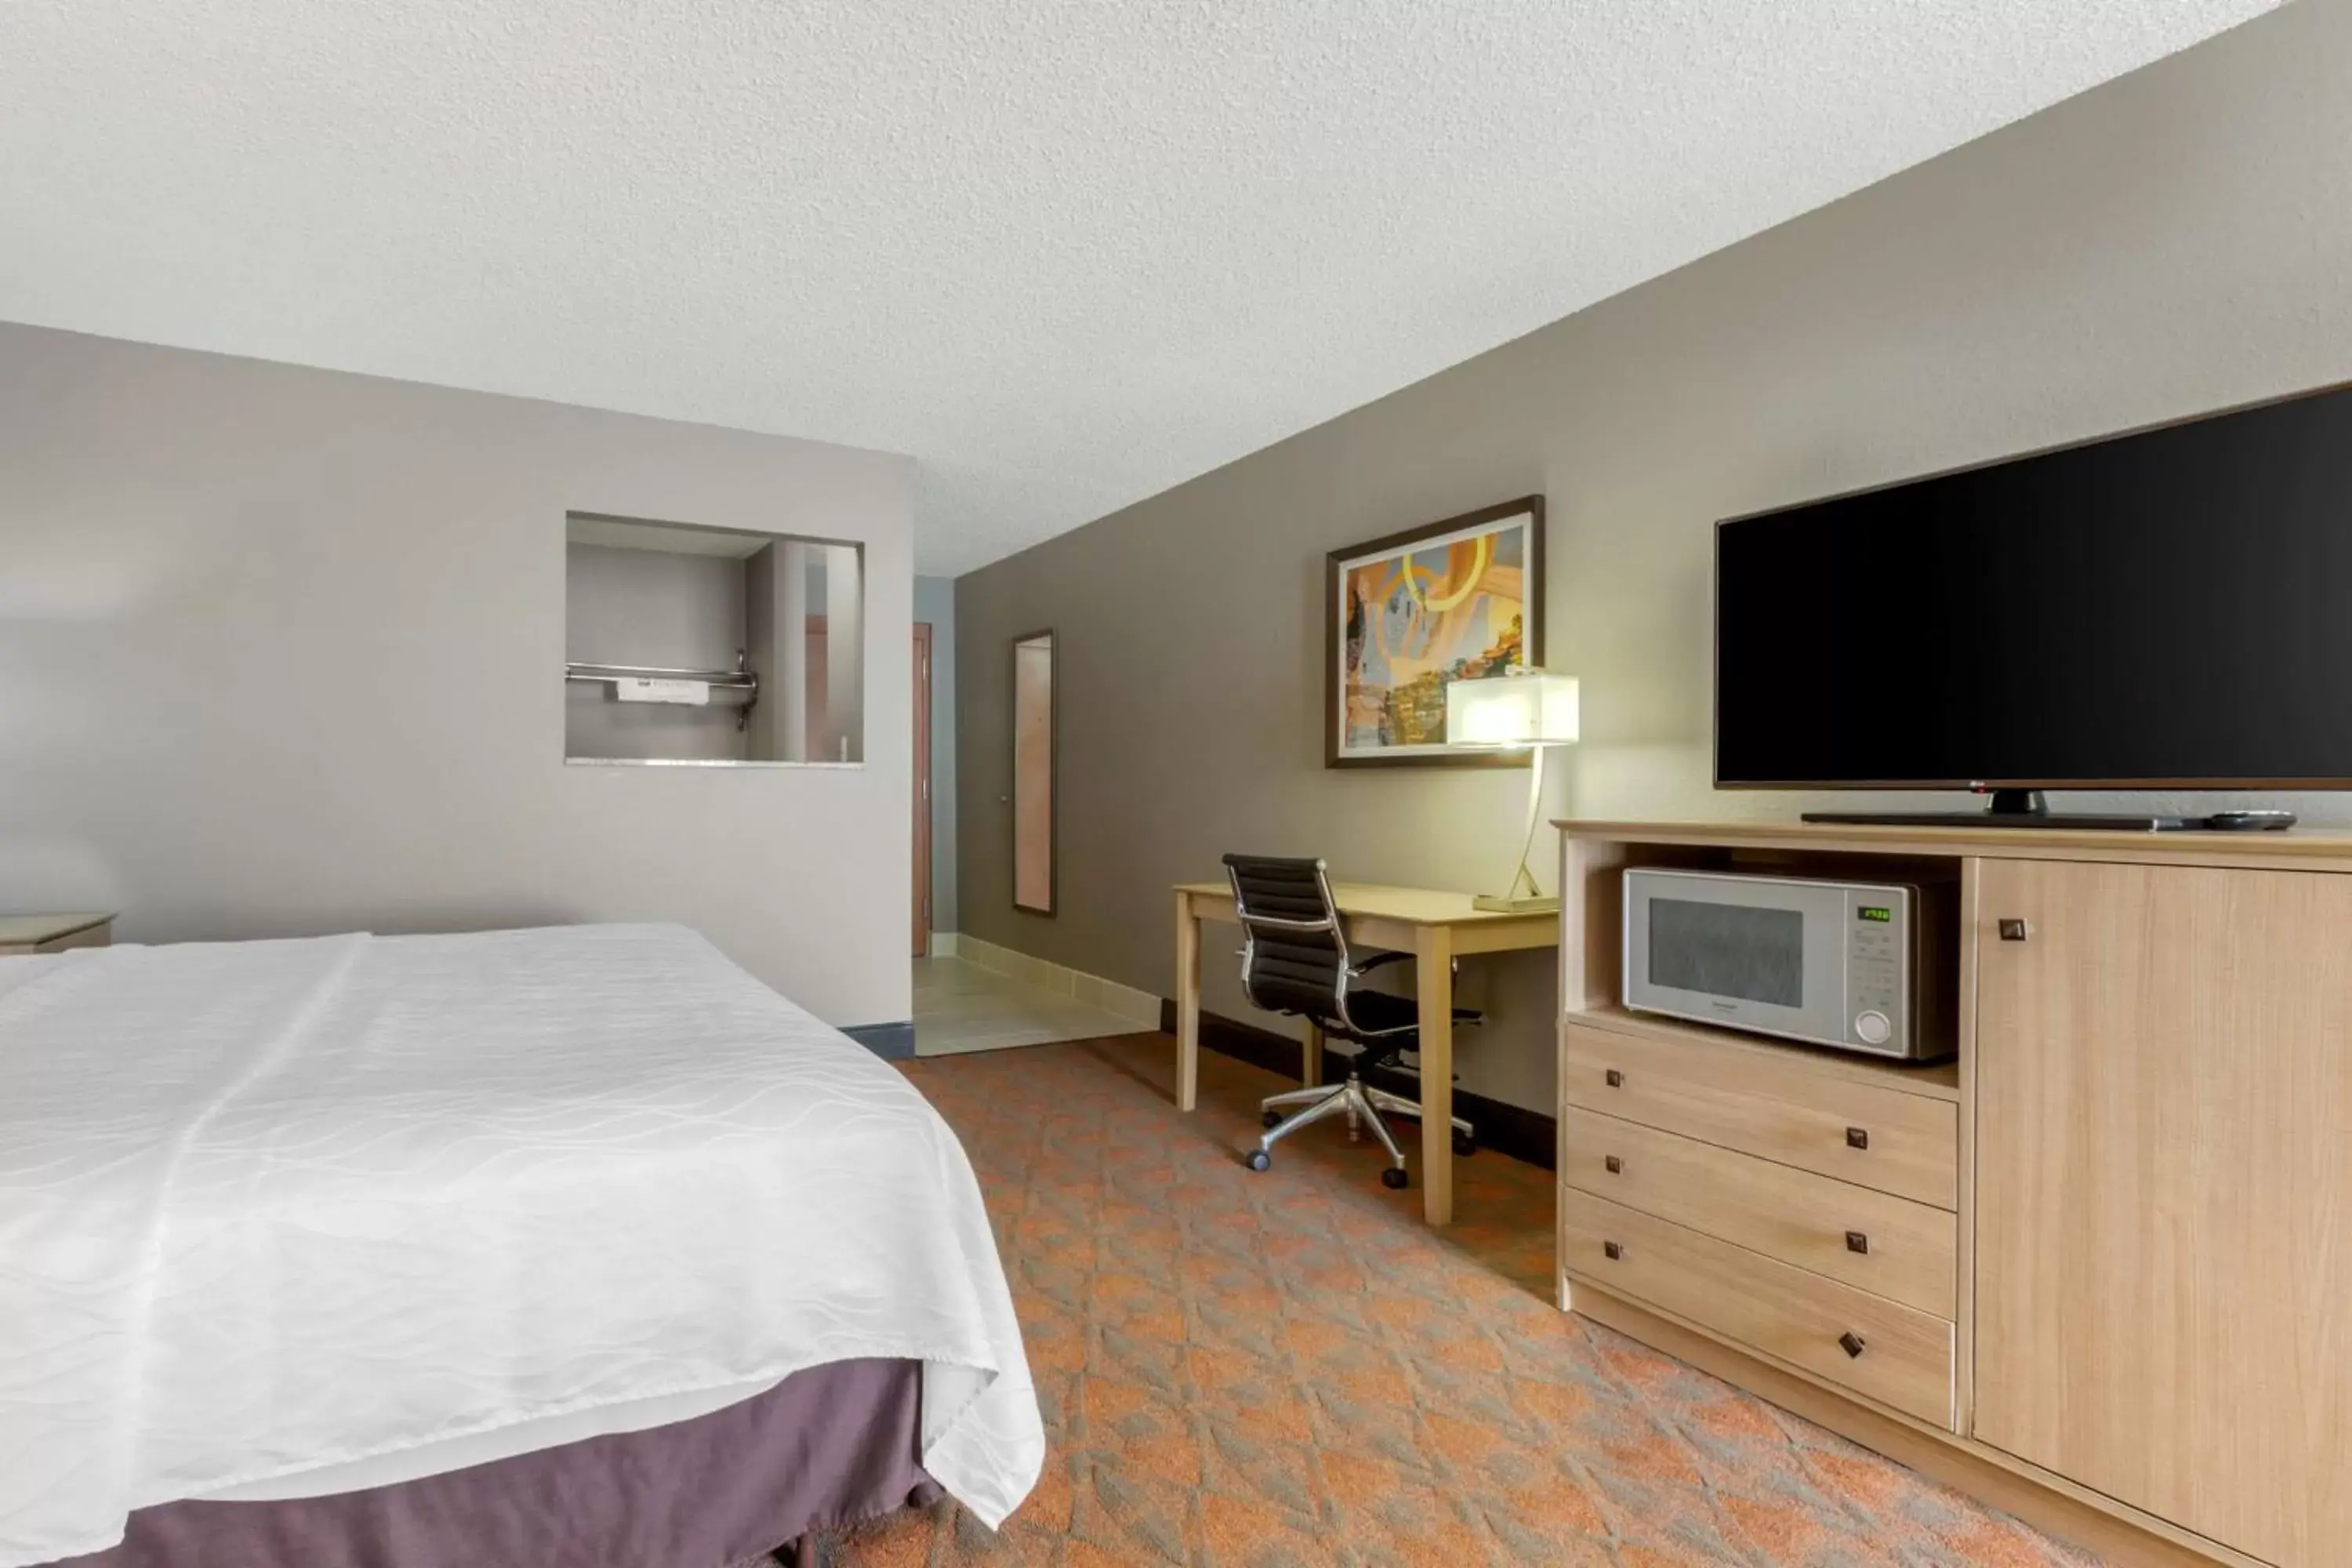 Bedroom, TV/Entertainment Center in Best Western Pecos Inn